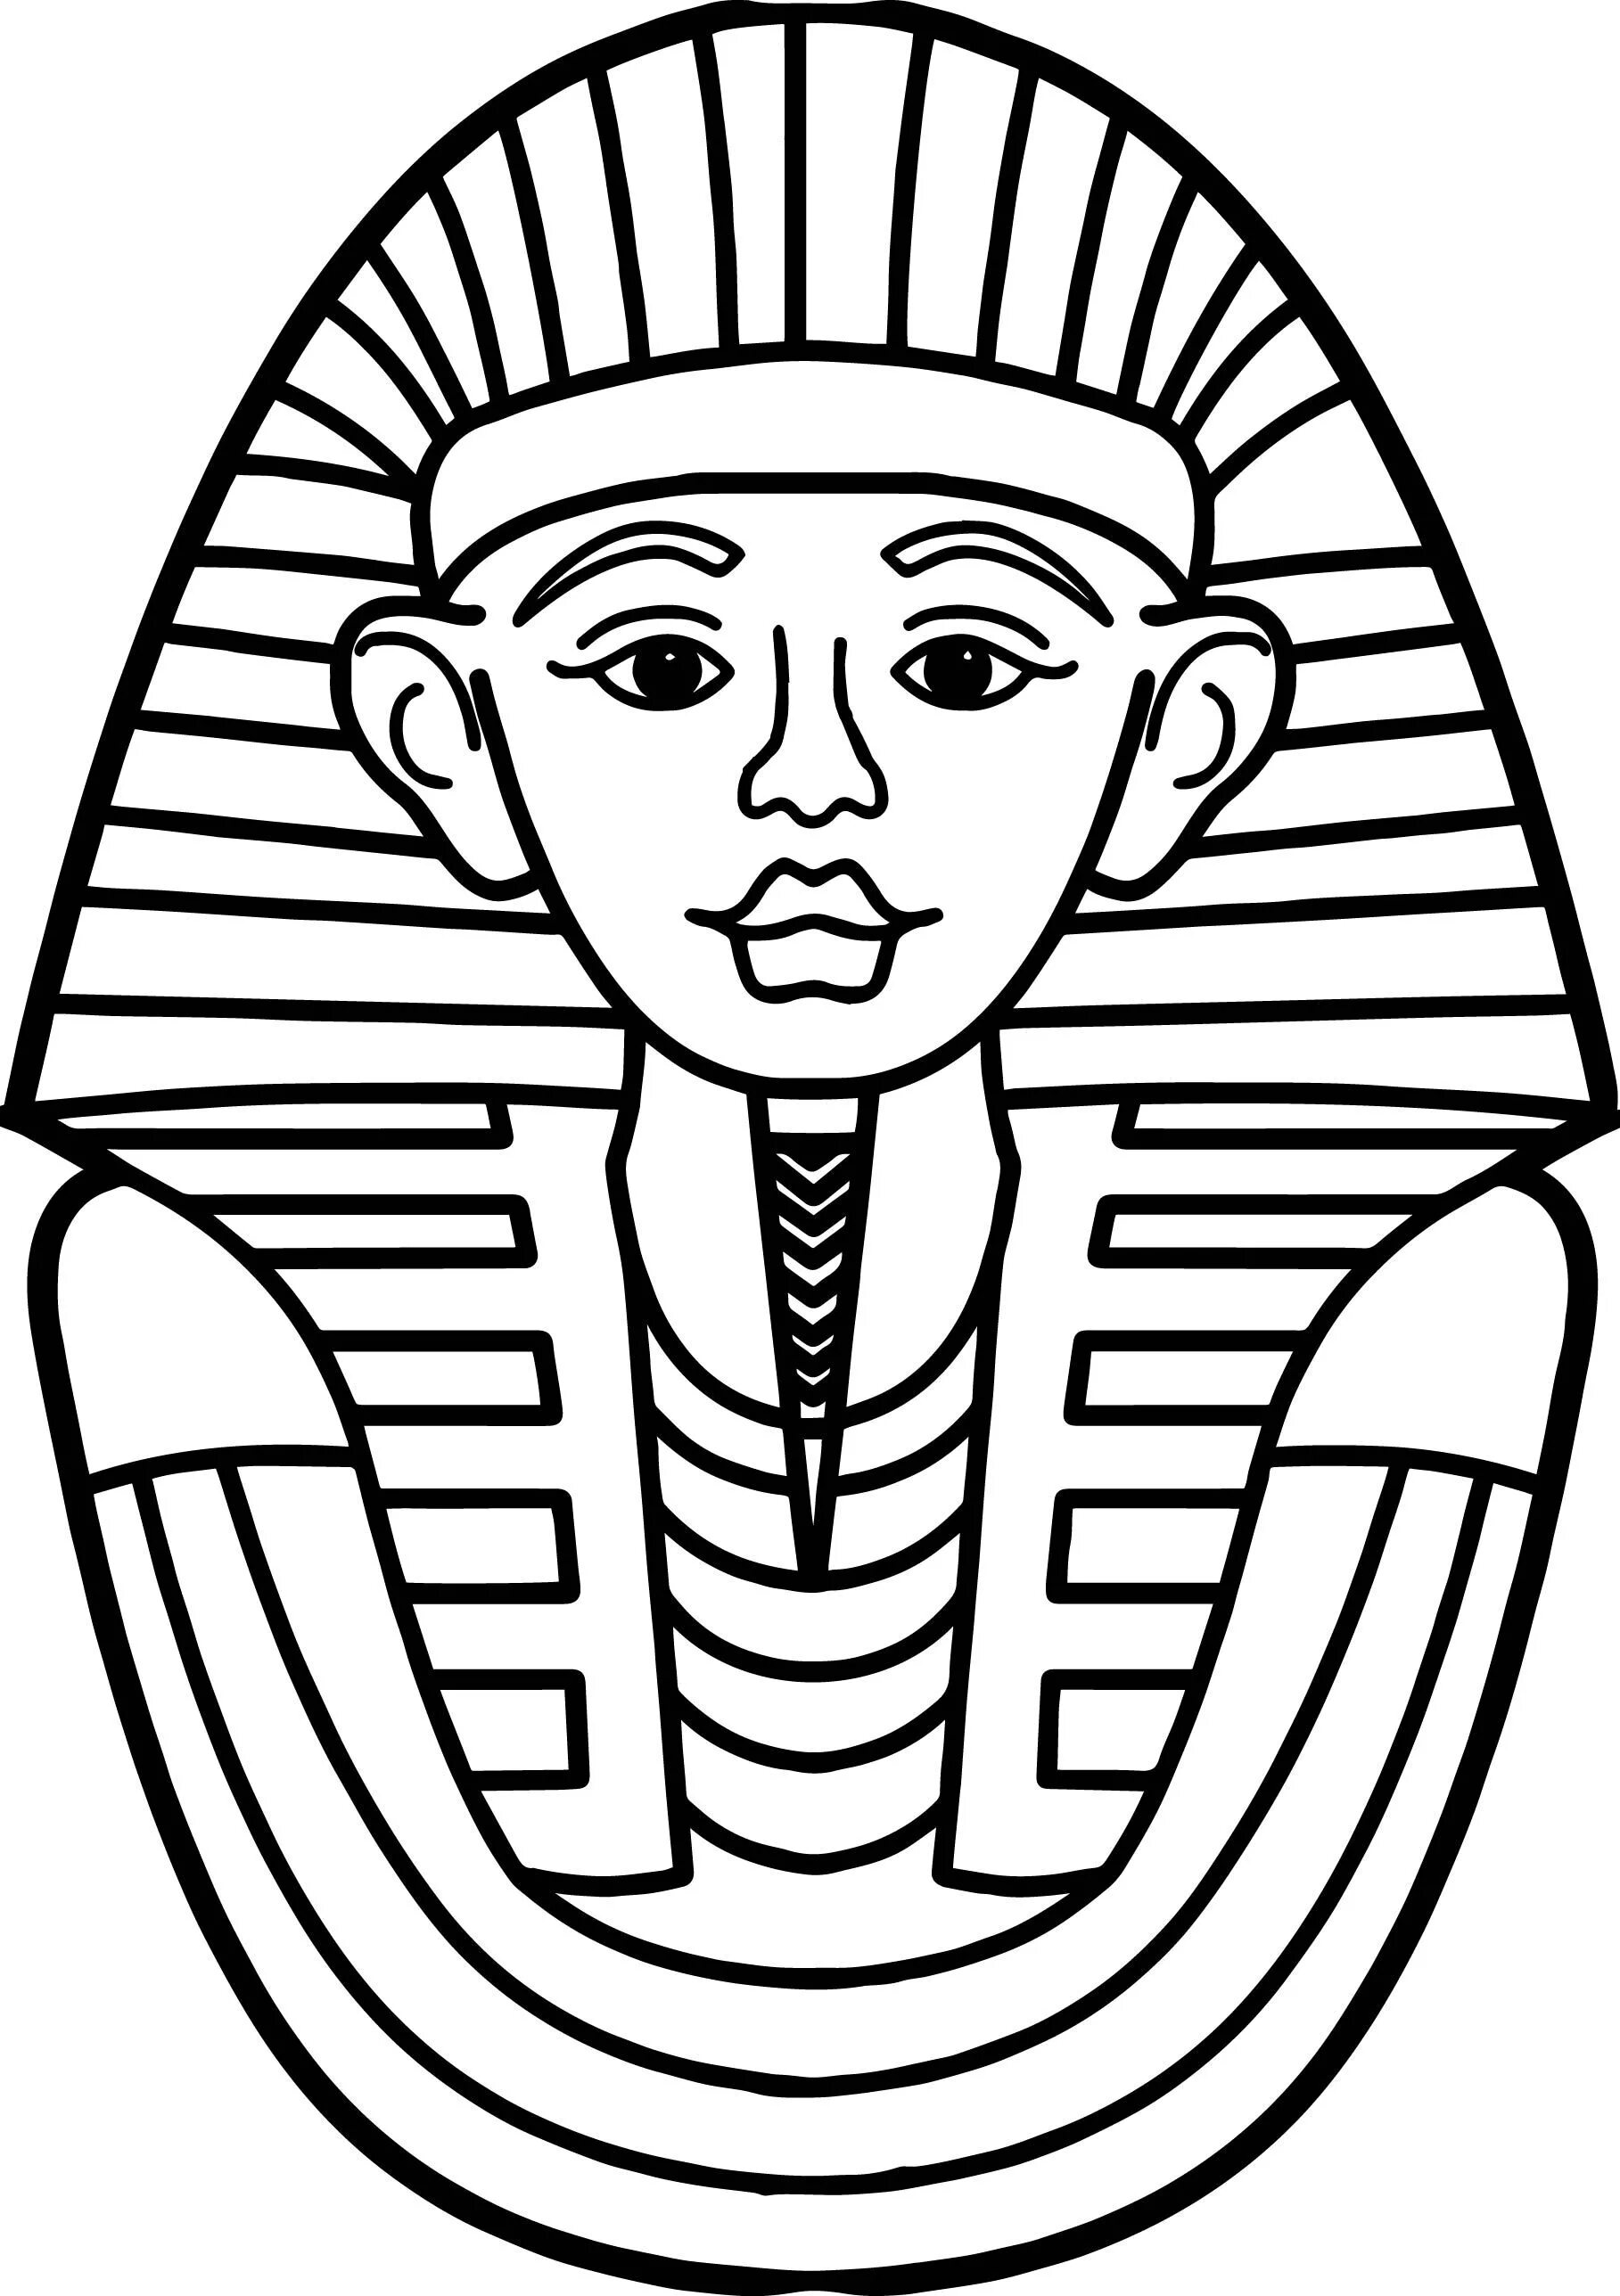 Coloring page beckoning pharaoh mask